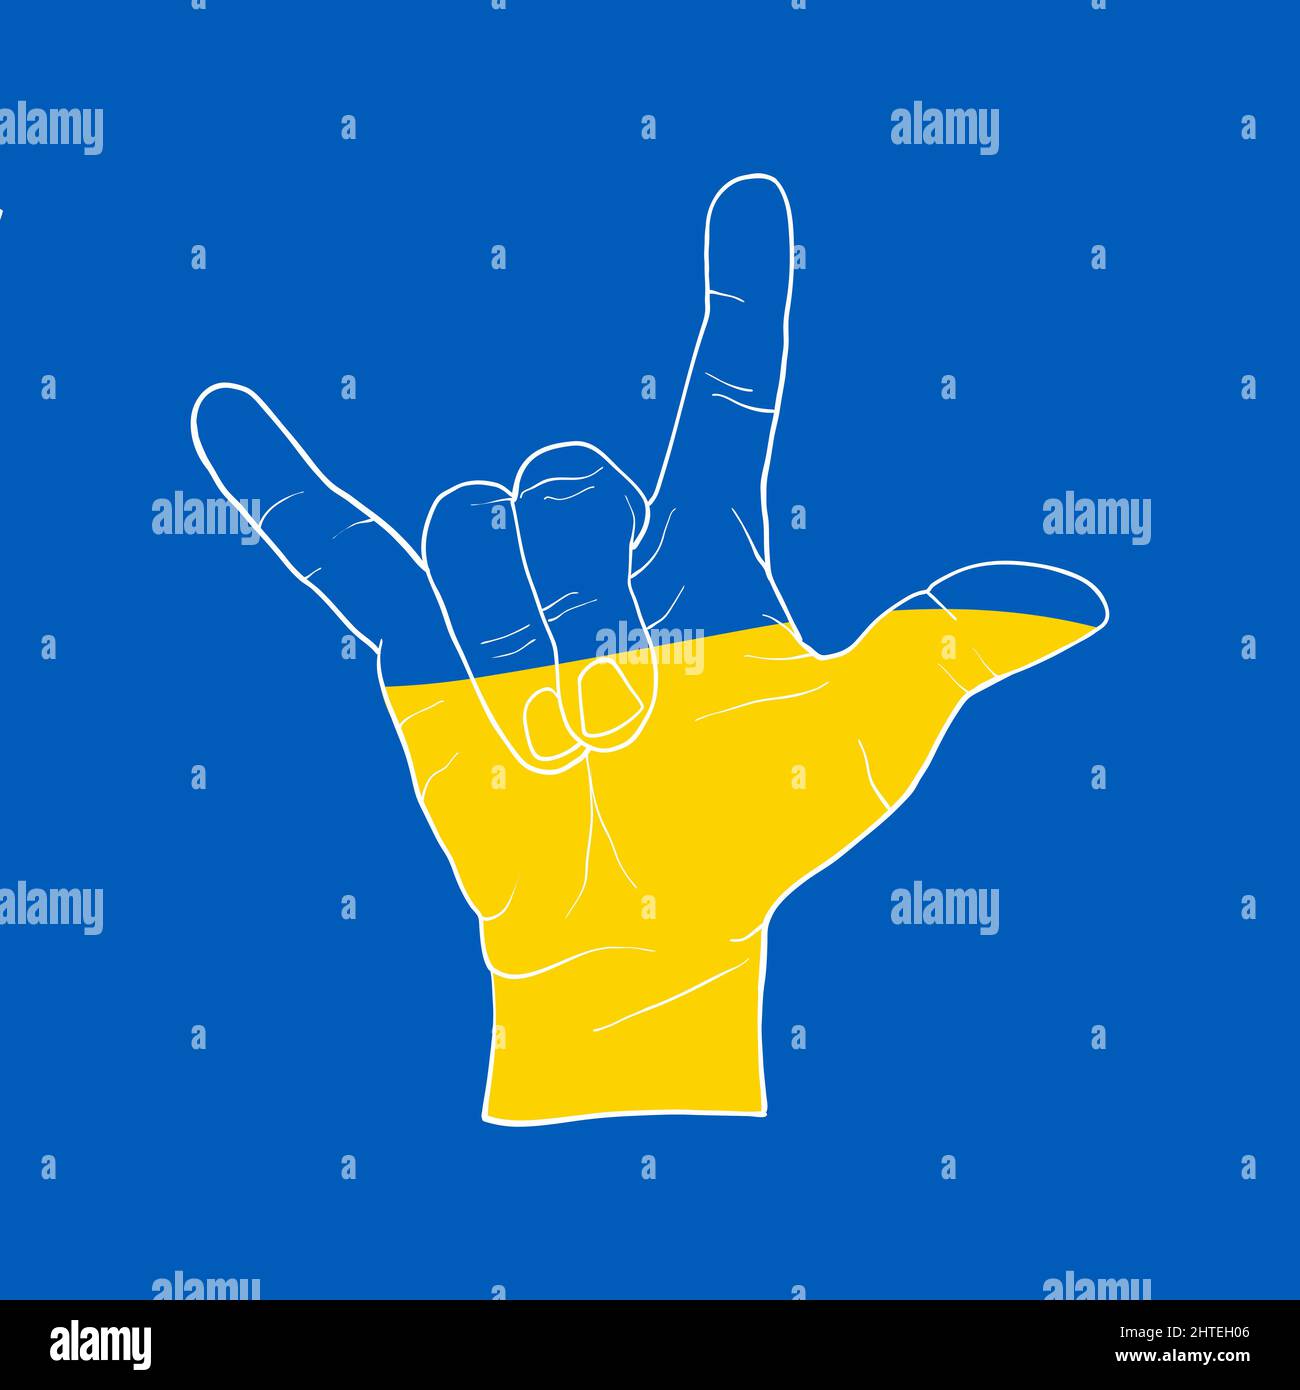 Hupensymbol mit drei Fingern. Symbol für die Unterstützung der Menschen in Kiew und der Ukraine. Gemeinsam stark bleiben. Patriotisches Symbol, Icon.-SupplementalCategories+=Bilder Stock Vektor